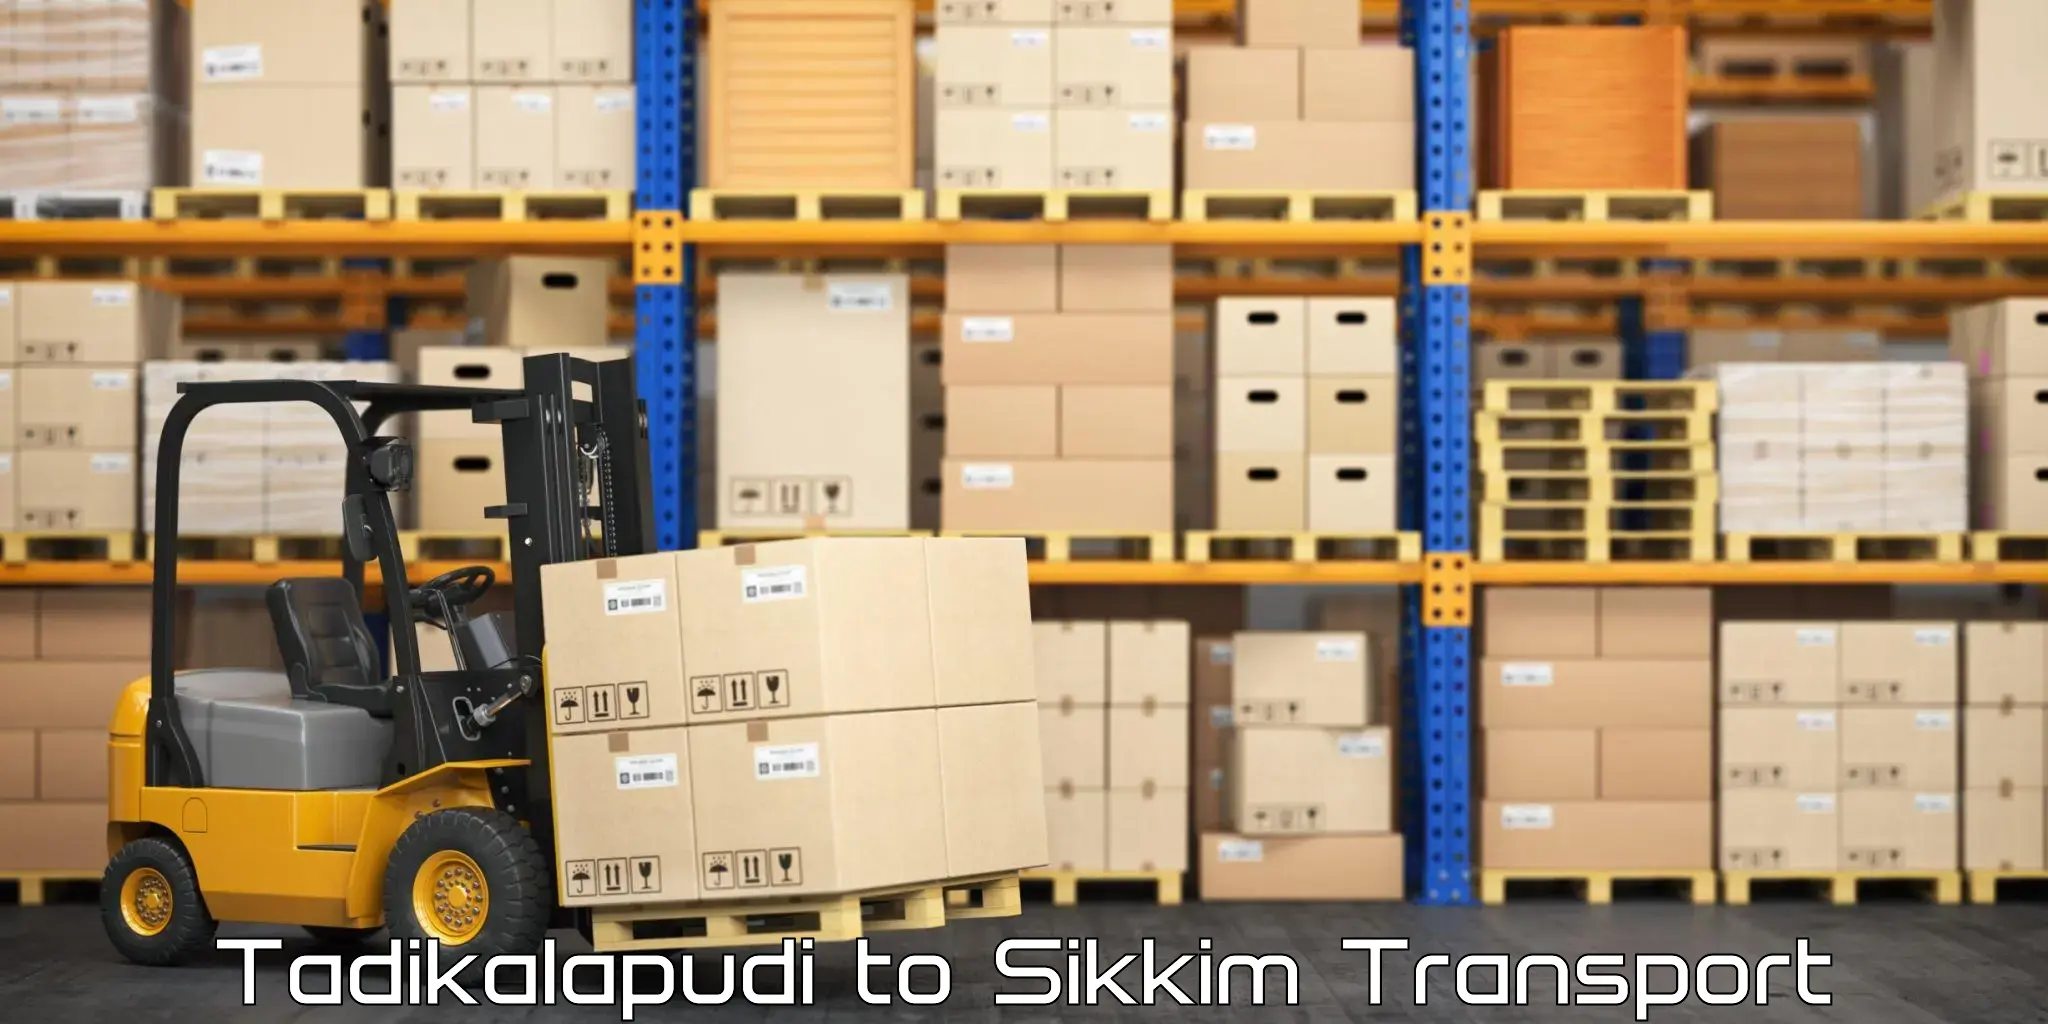 Luggage transport services Tadikalapudi to West Sikkim